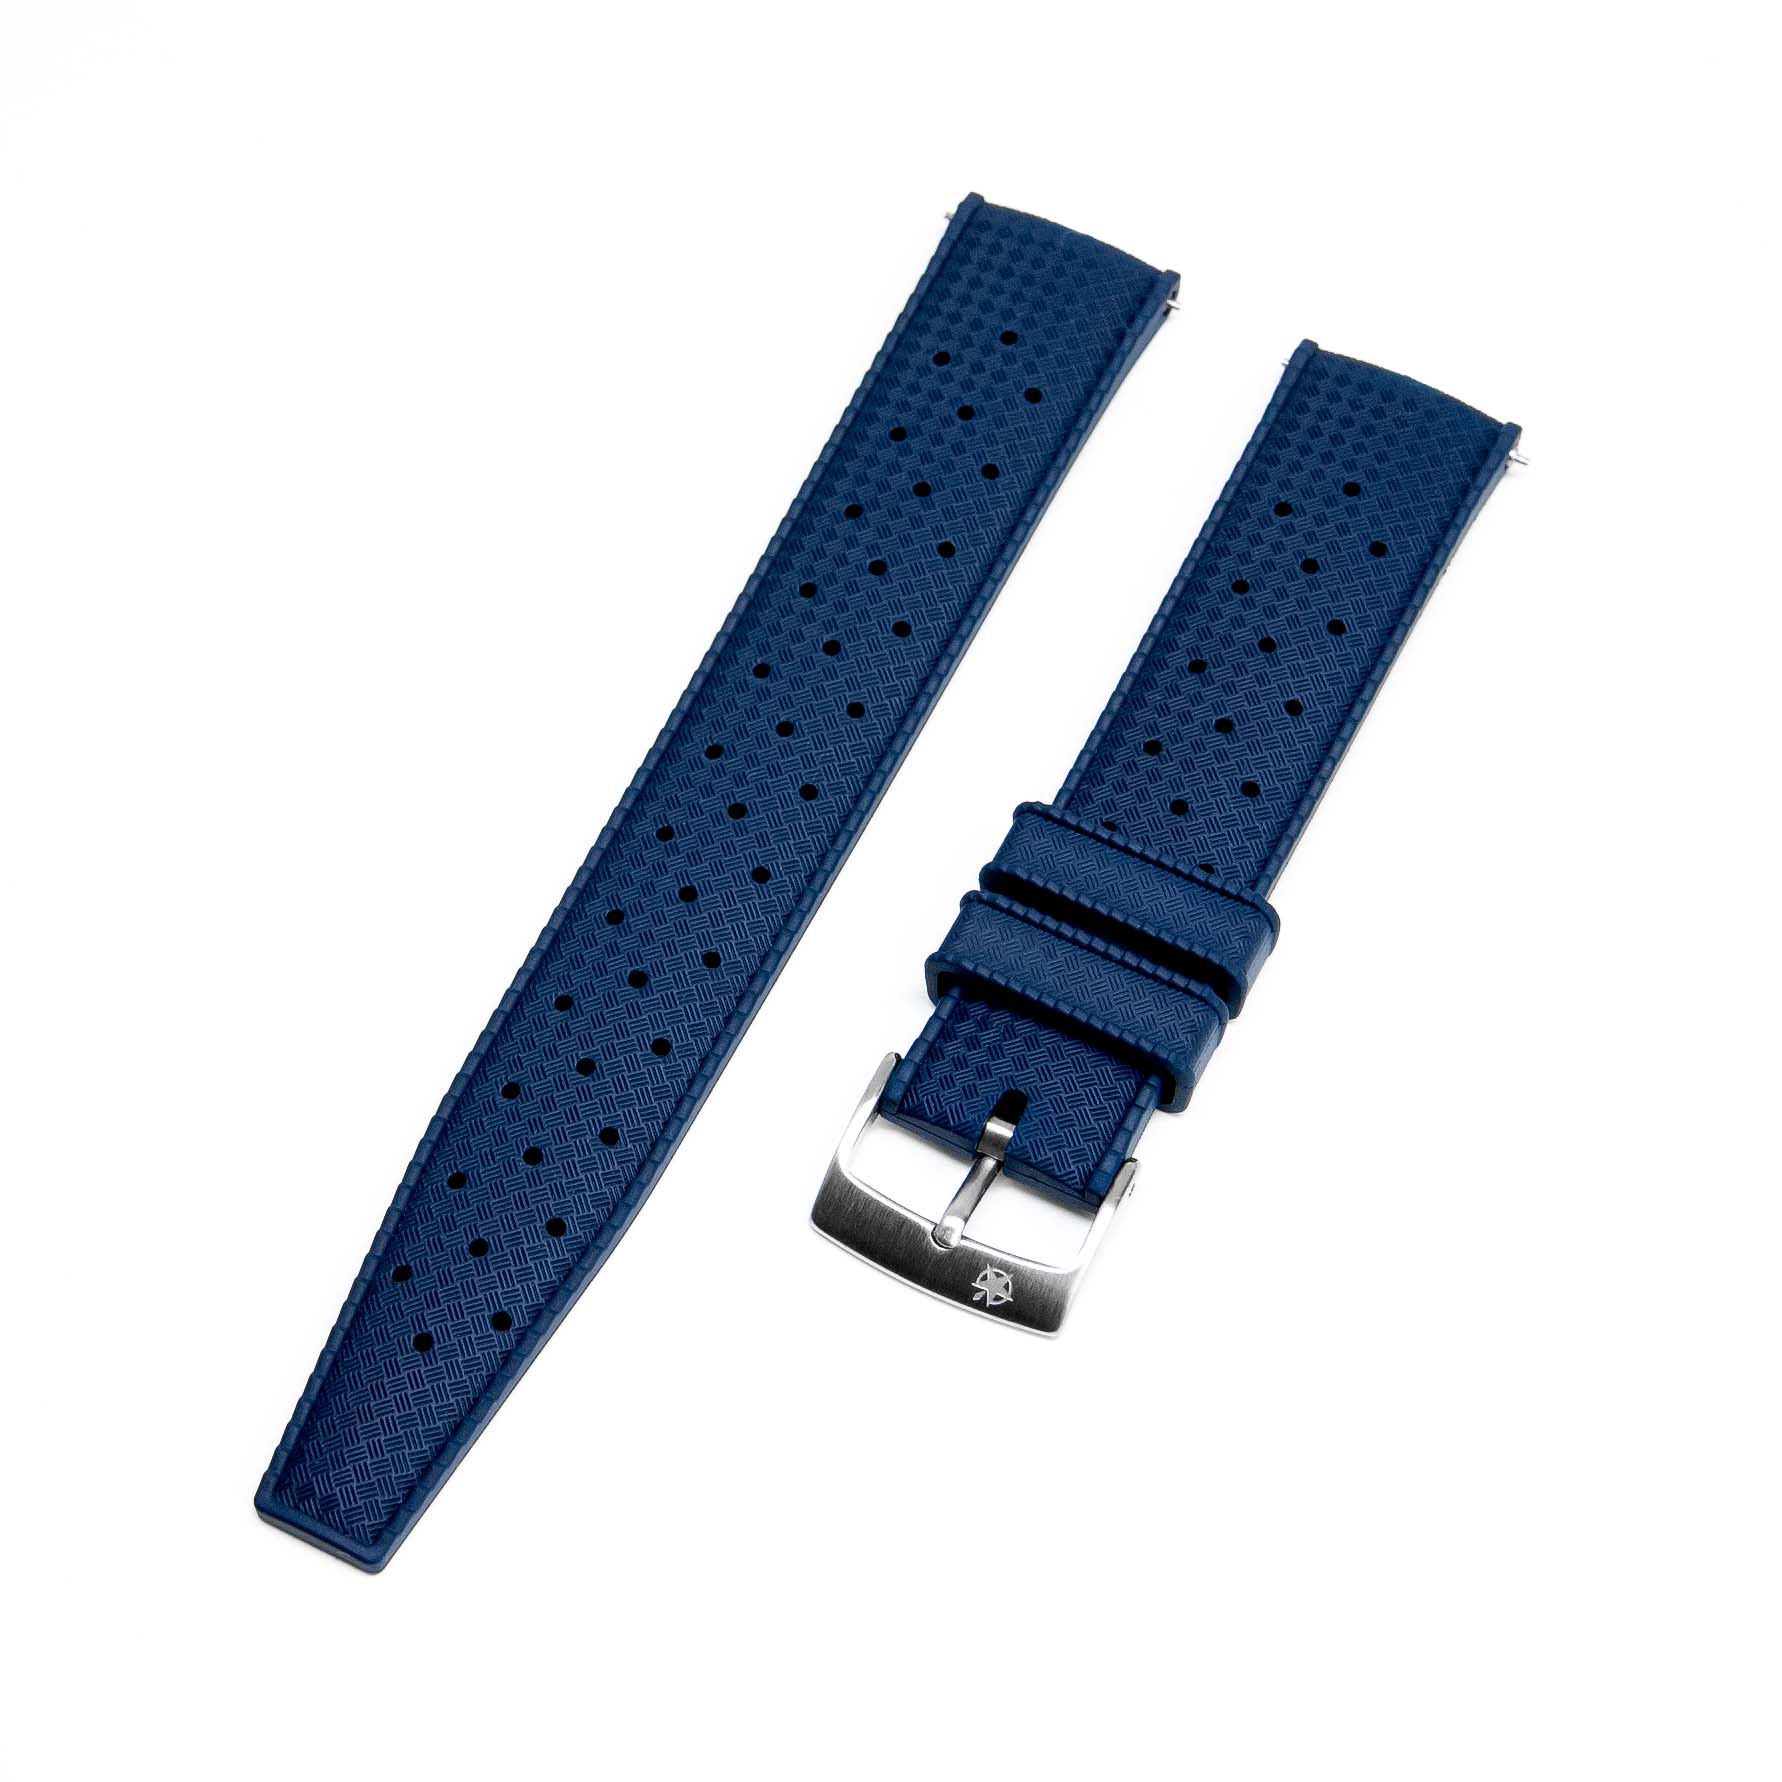 TROPIC RUBBER STRAP – BLUE